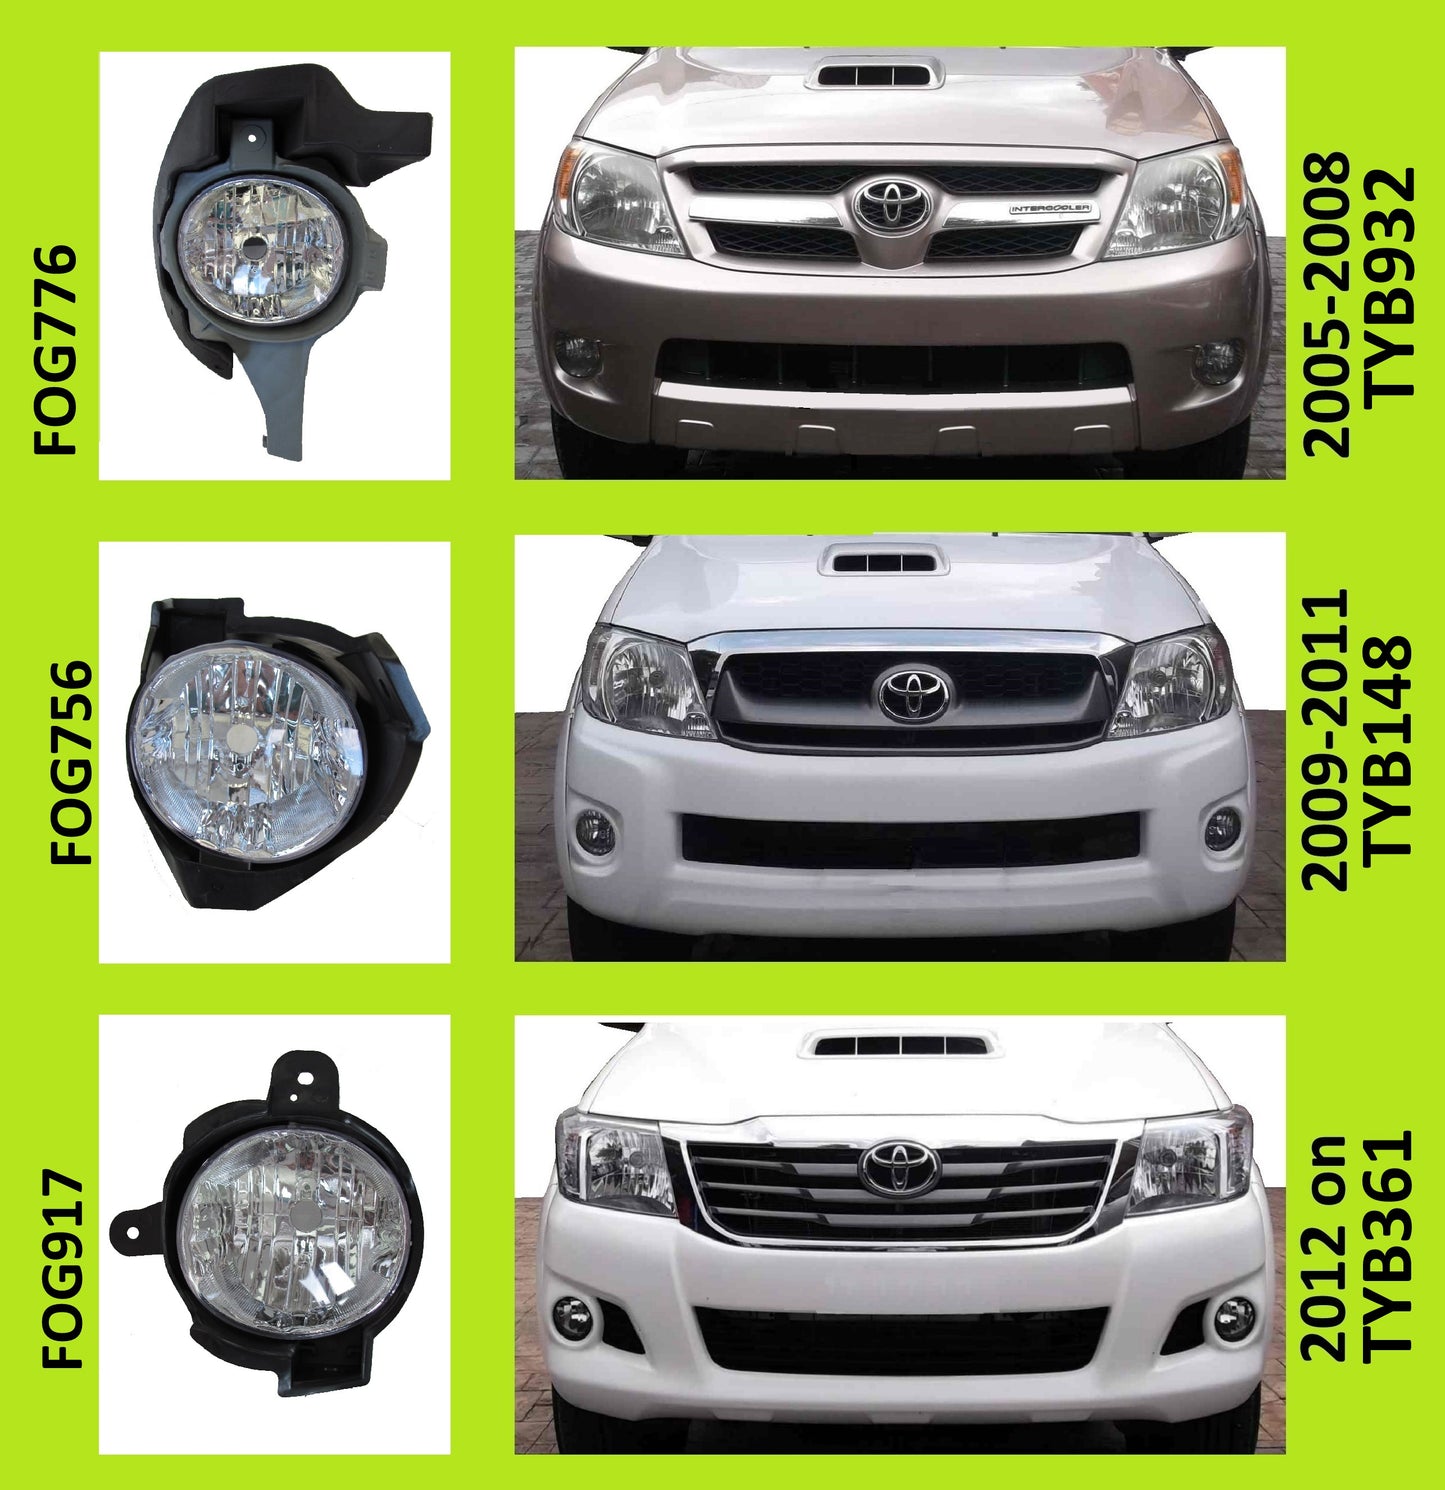 Front Fog Lamp Light Kit for Toyota Hilux Mk7 Pickup 2012 on